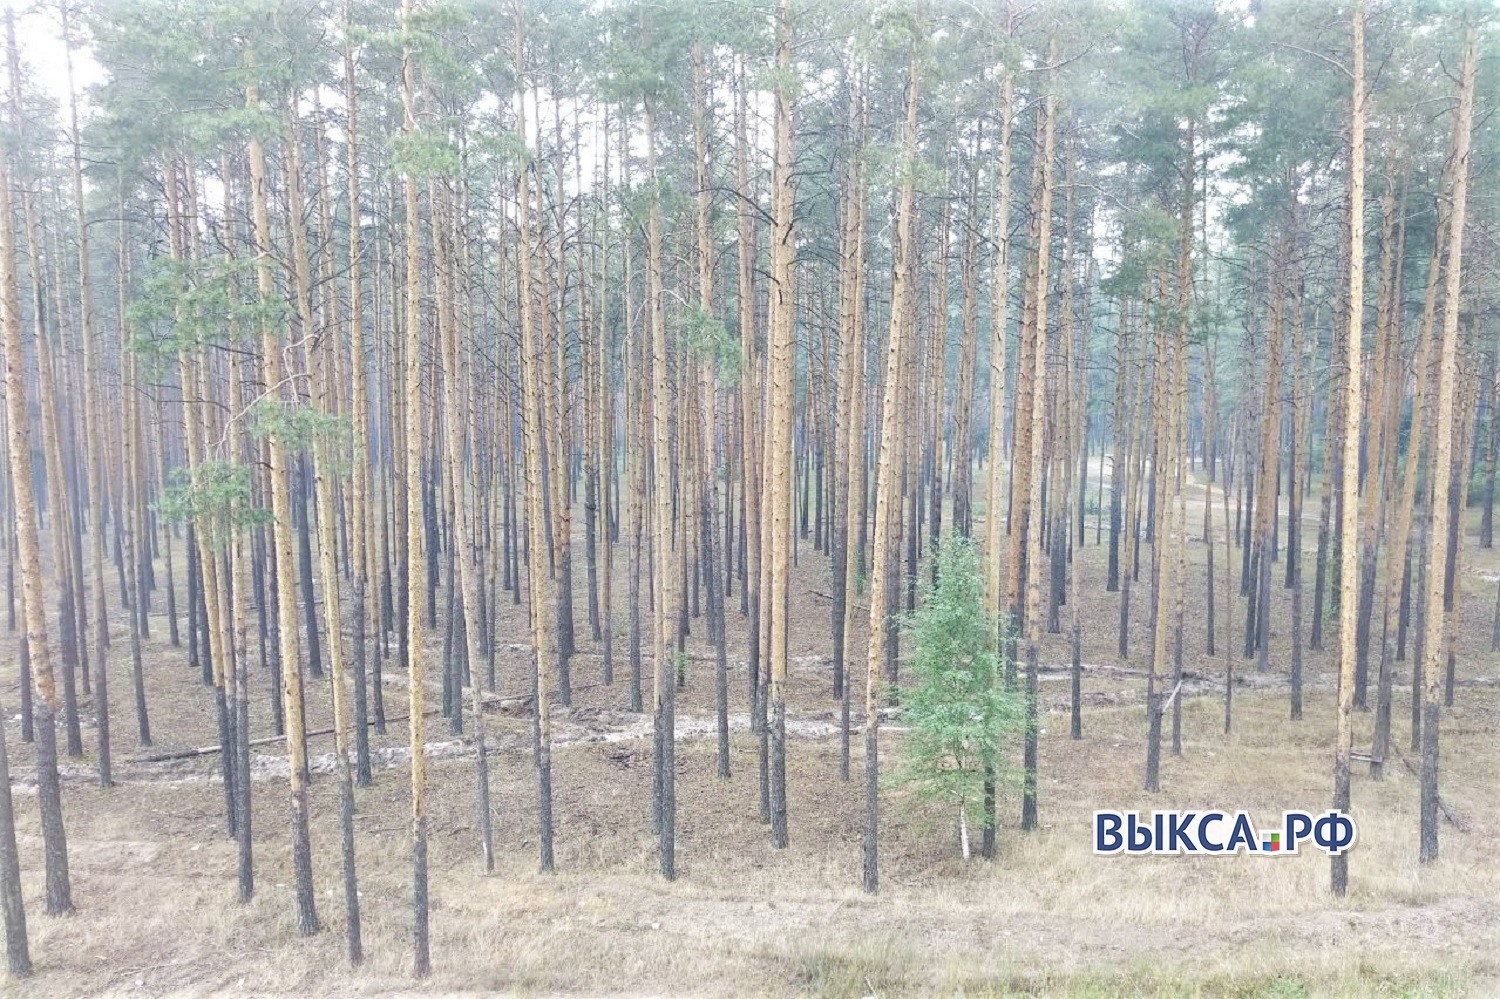 Выксу накрыл дым от пожара в Мордовском заповеднике